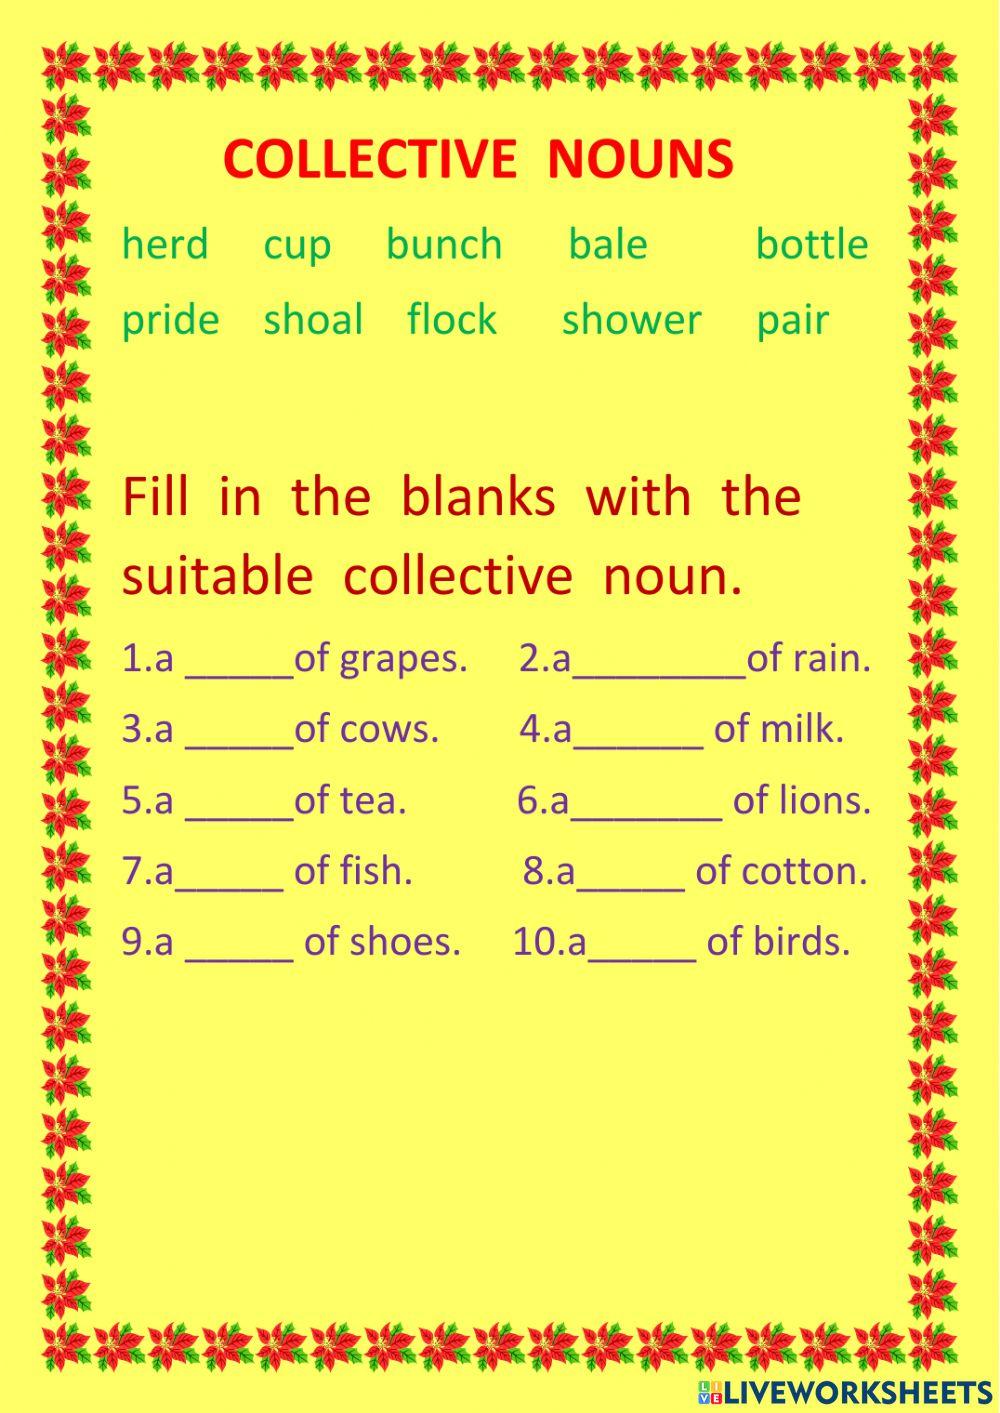 Collective nouns